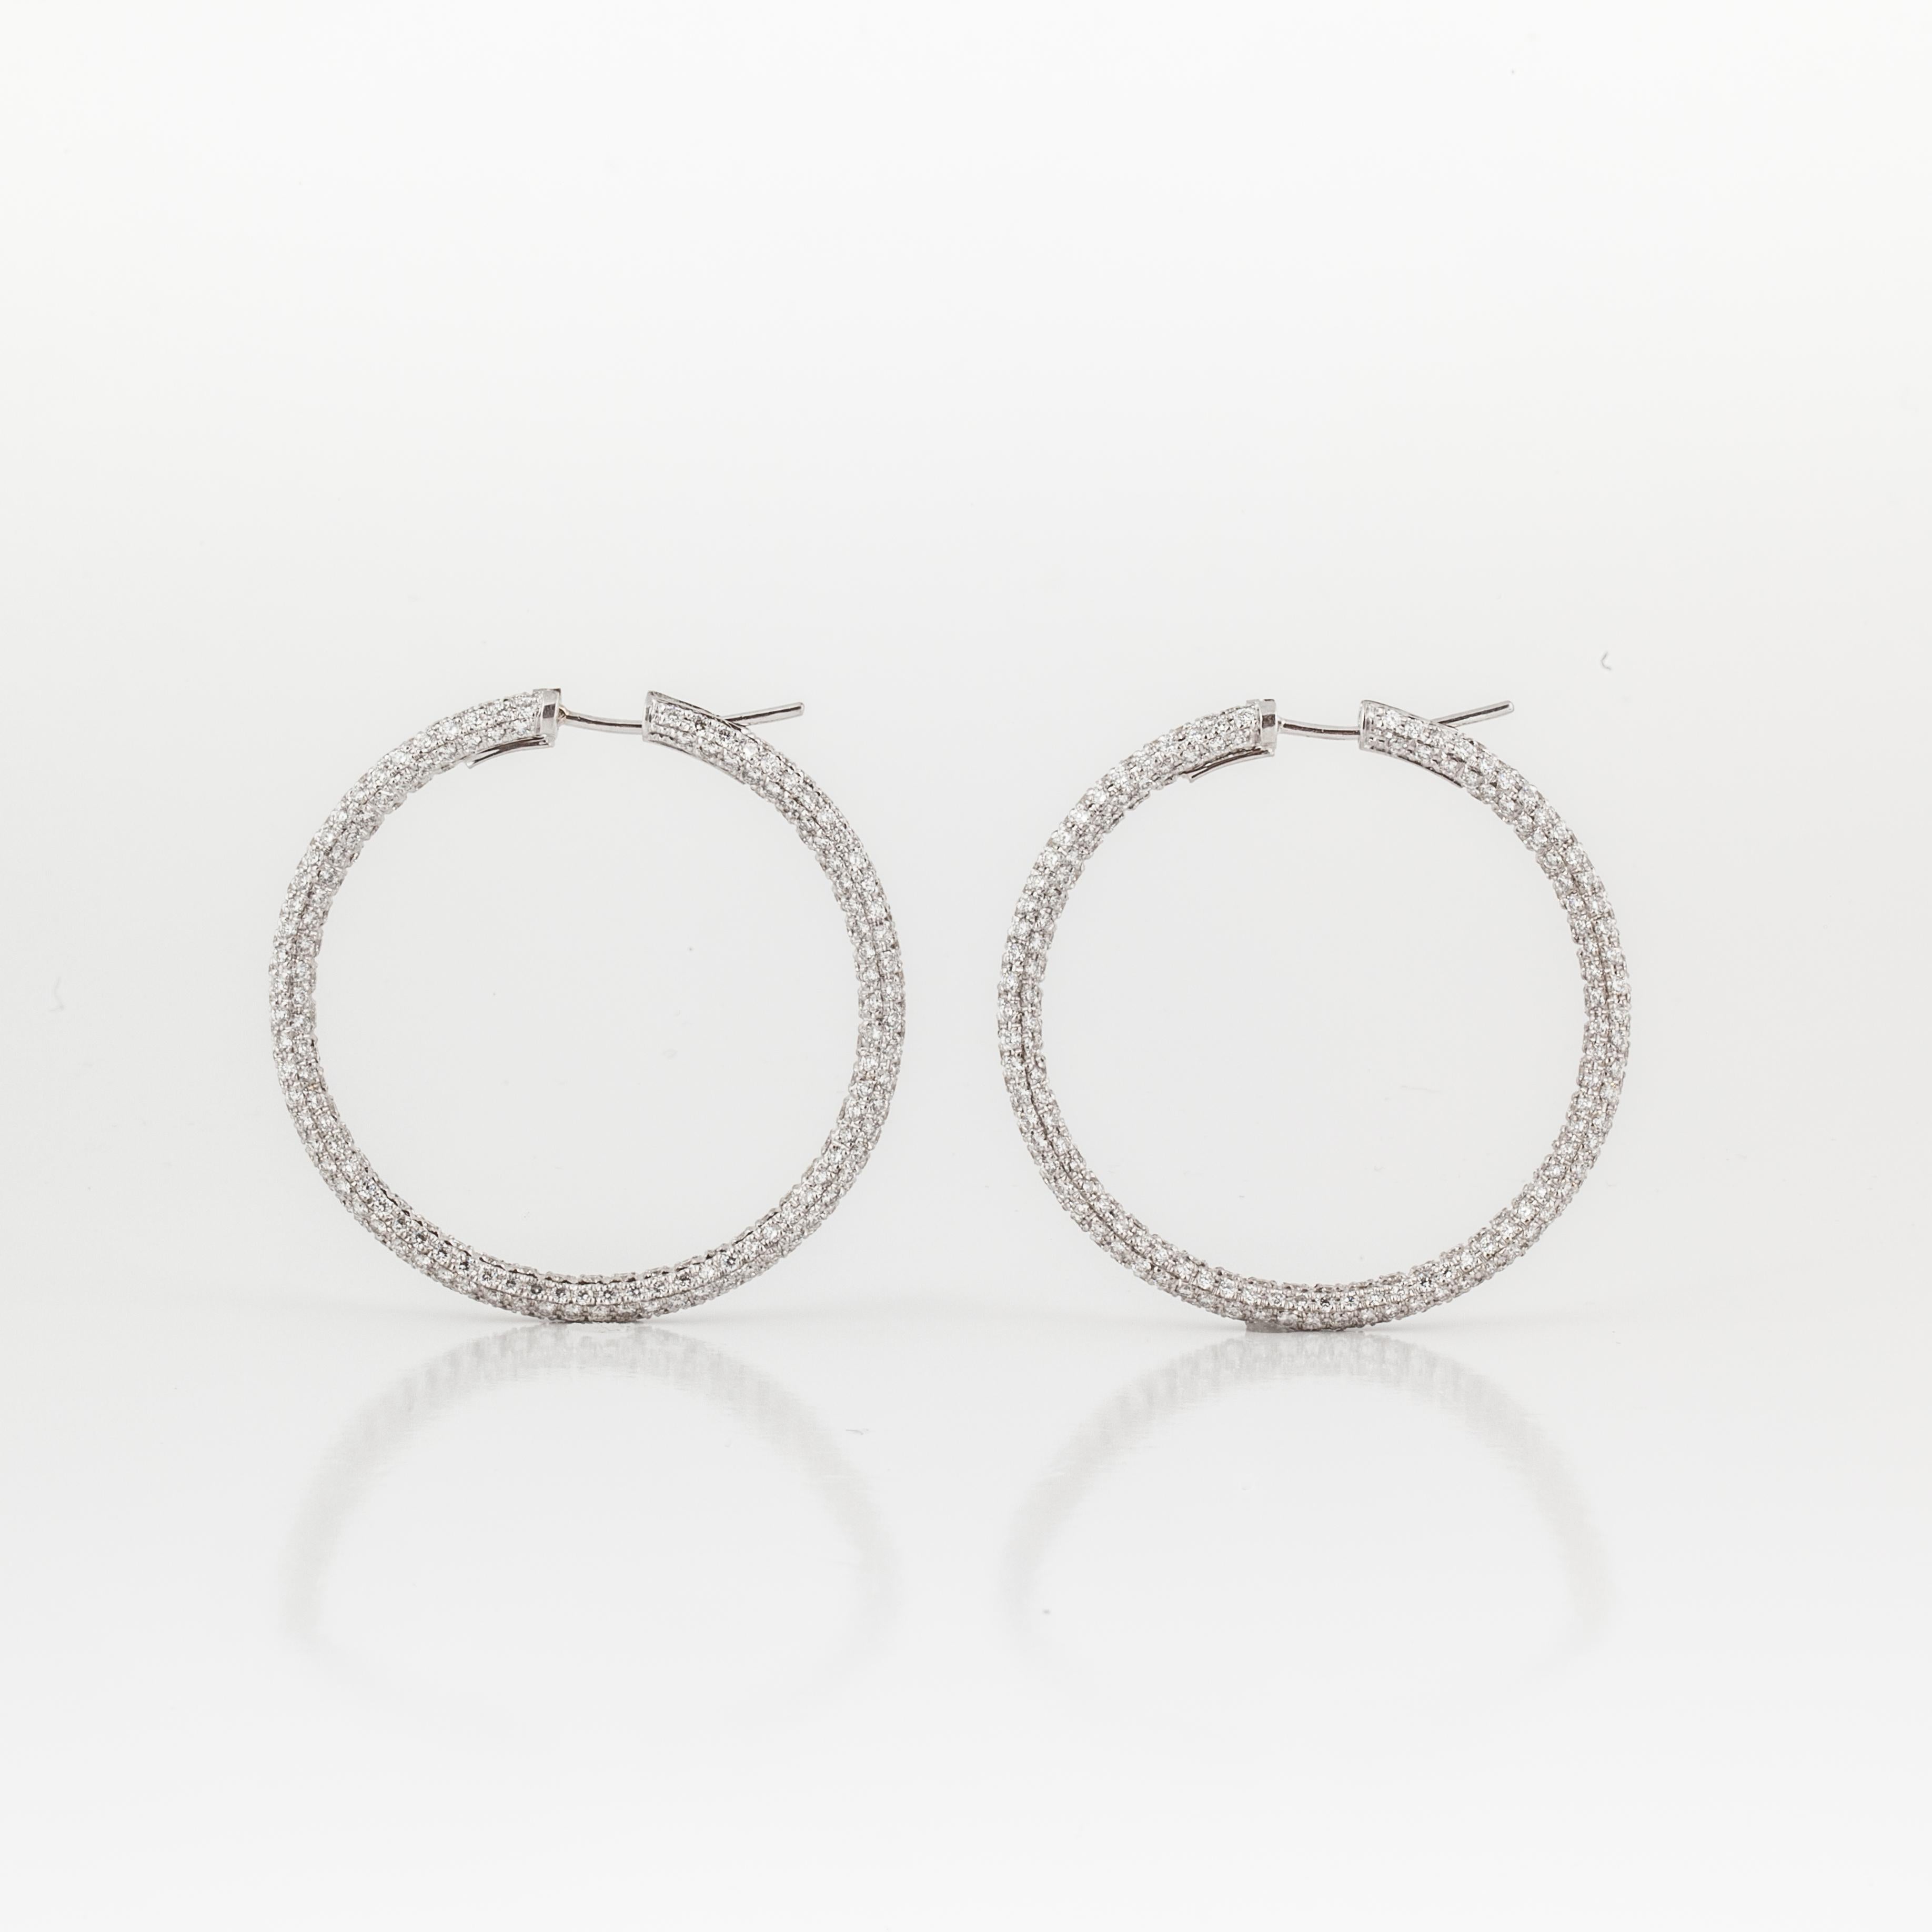 18K white gold pavé diamond hoop earrings marked 